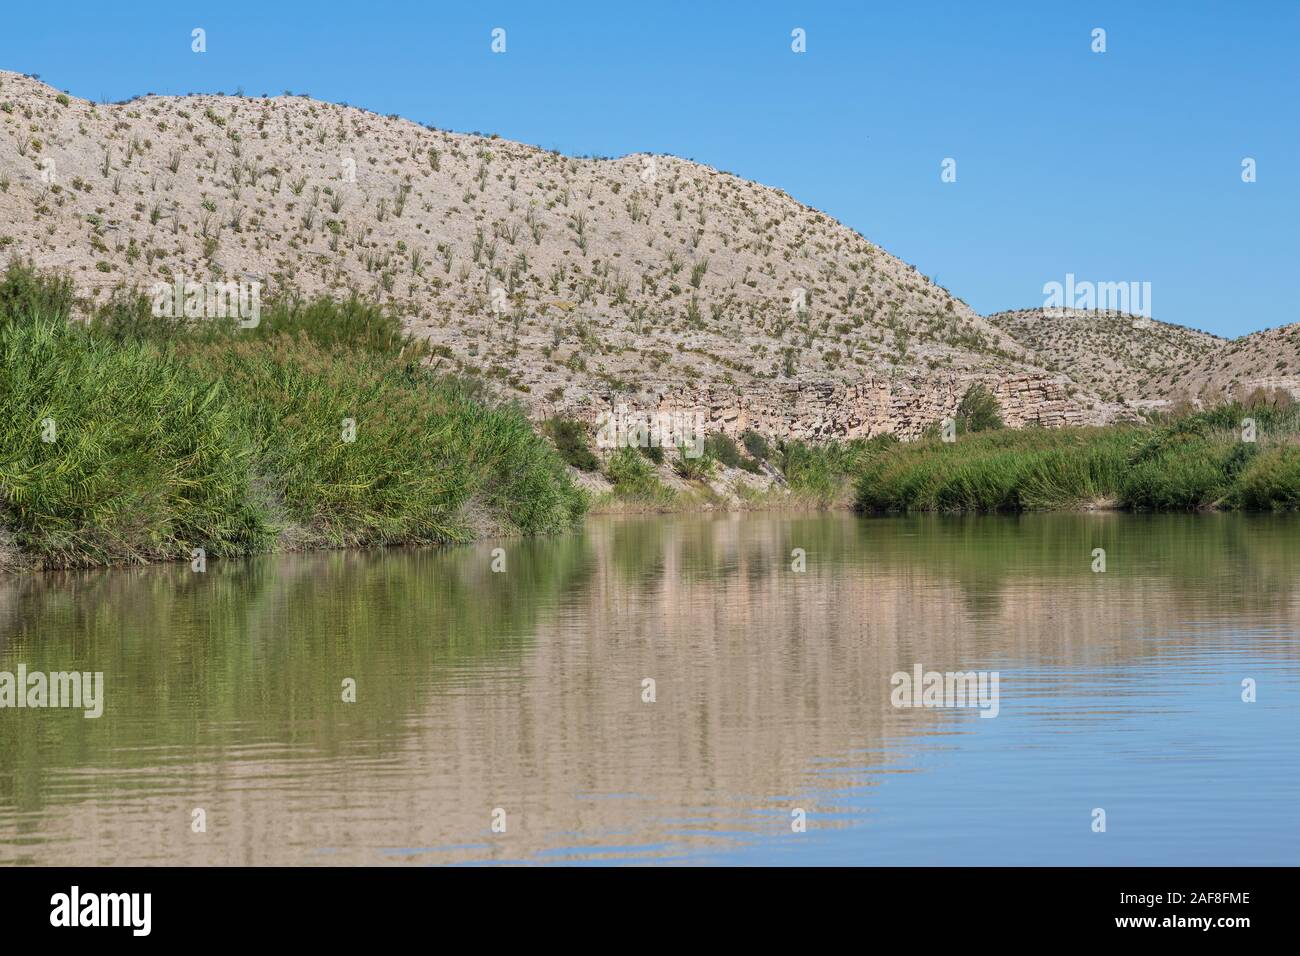 Rio Grande River, in der Nähe von Rio Grande Village, Big Bend National Park, Texas. Carrizo Zuckerrohr (arundo donax), eine invasive Arten, Linien River Bank. Stockfoto